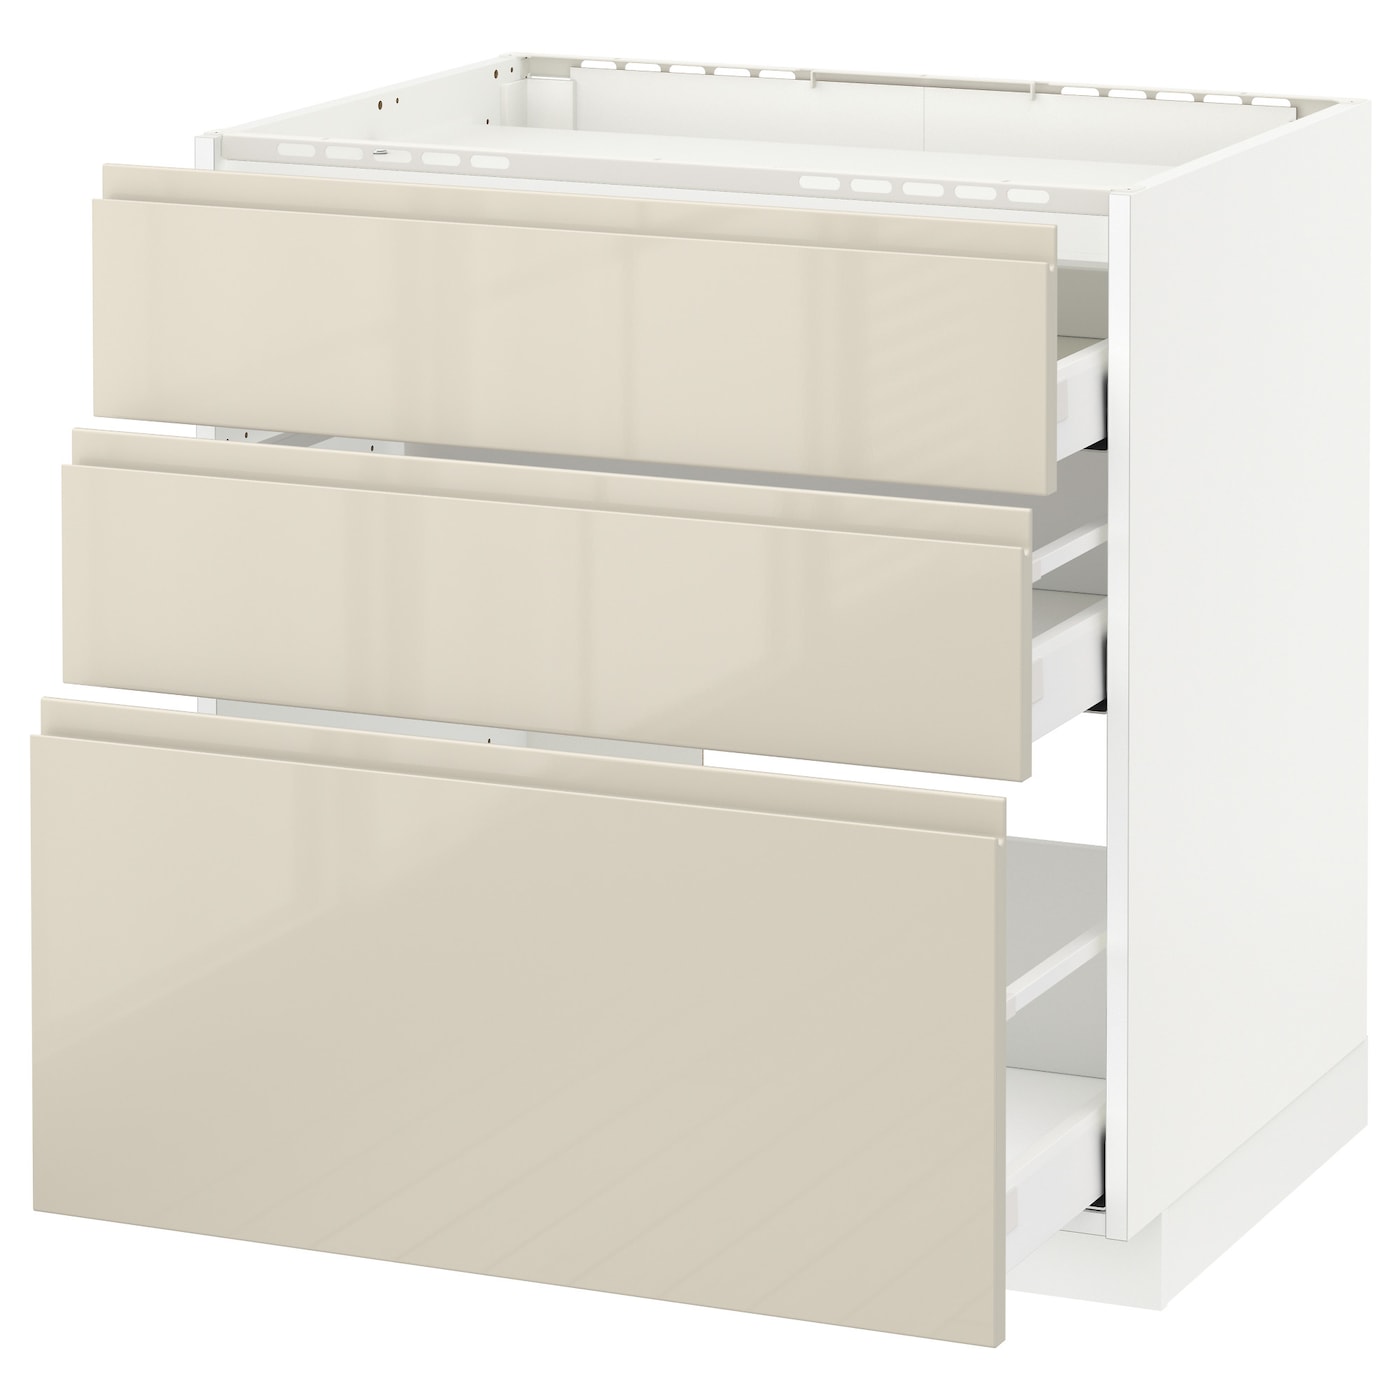 Напольный шкаф  - IKEA METOD MAXIMERA, 88x62,1x80см, белый/бежевый, МЕТОД МАКСИМЕРА ИКЕА